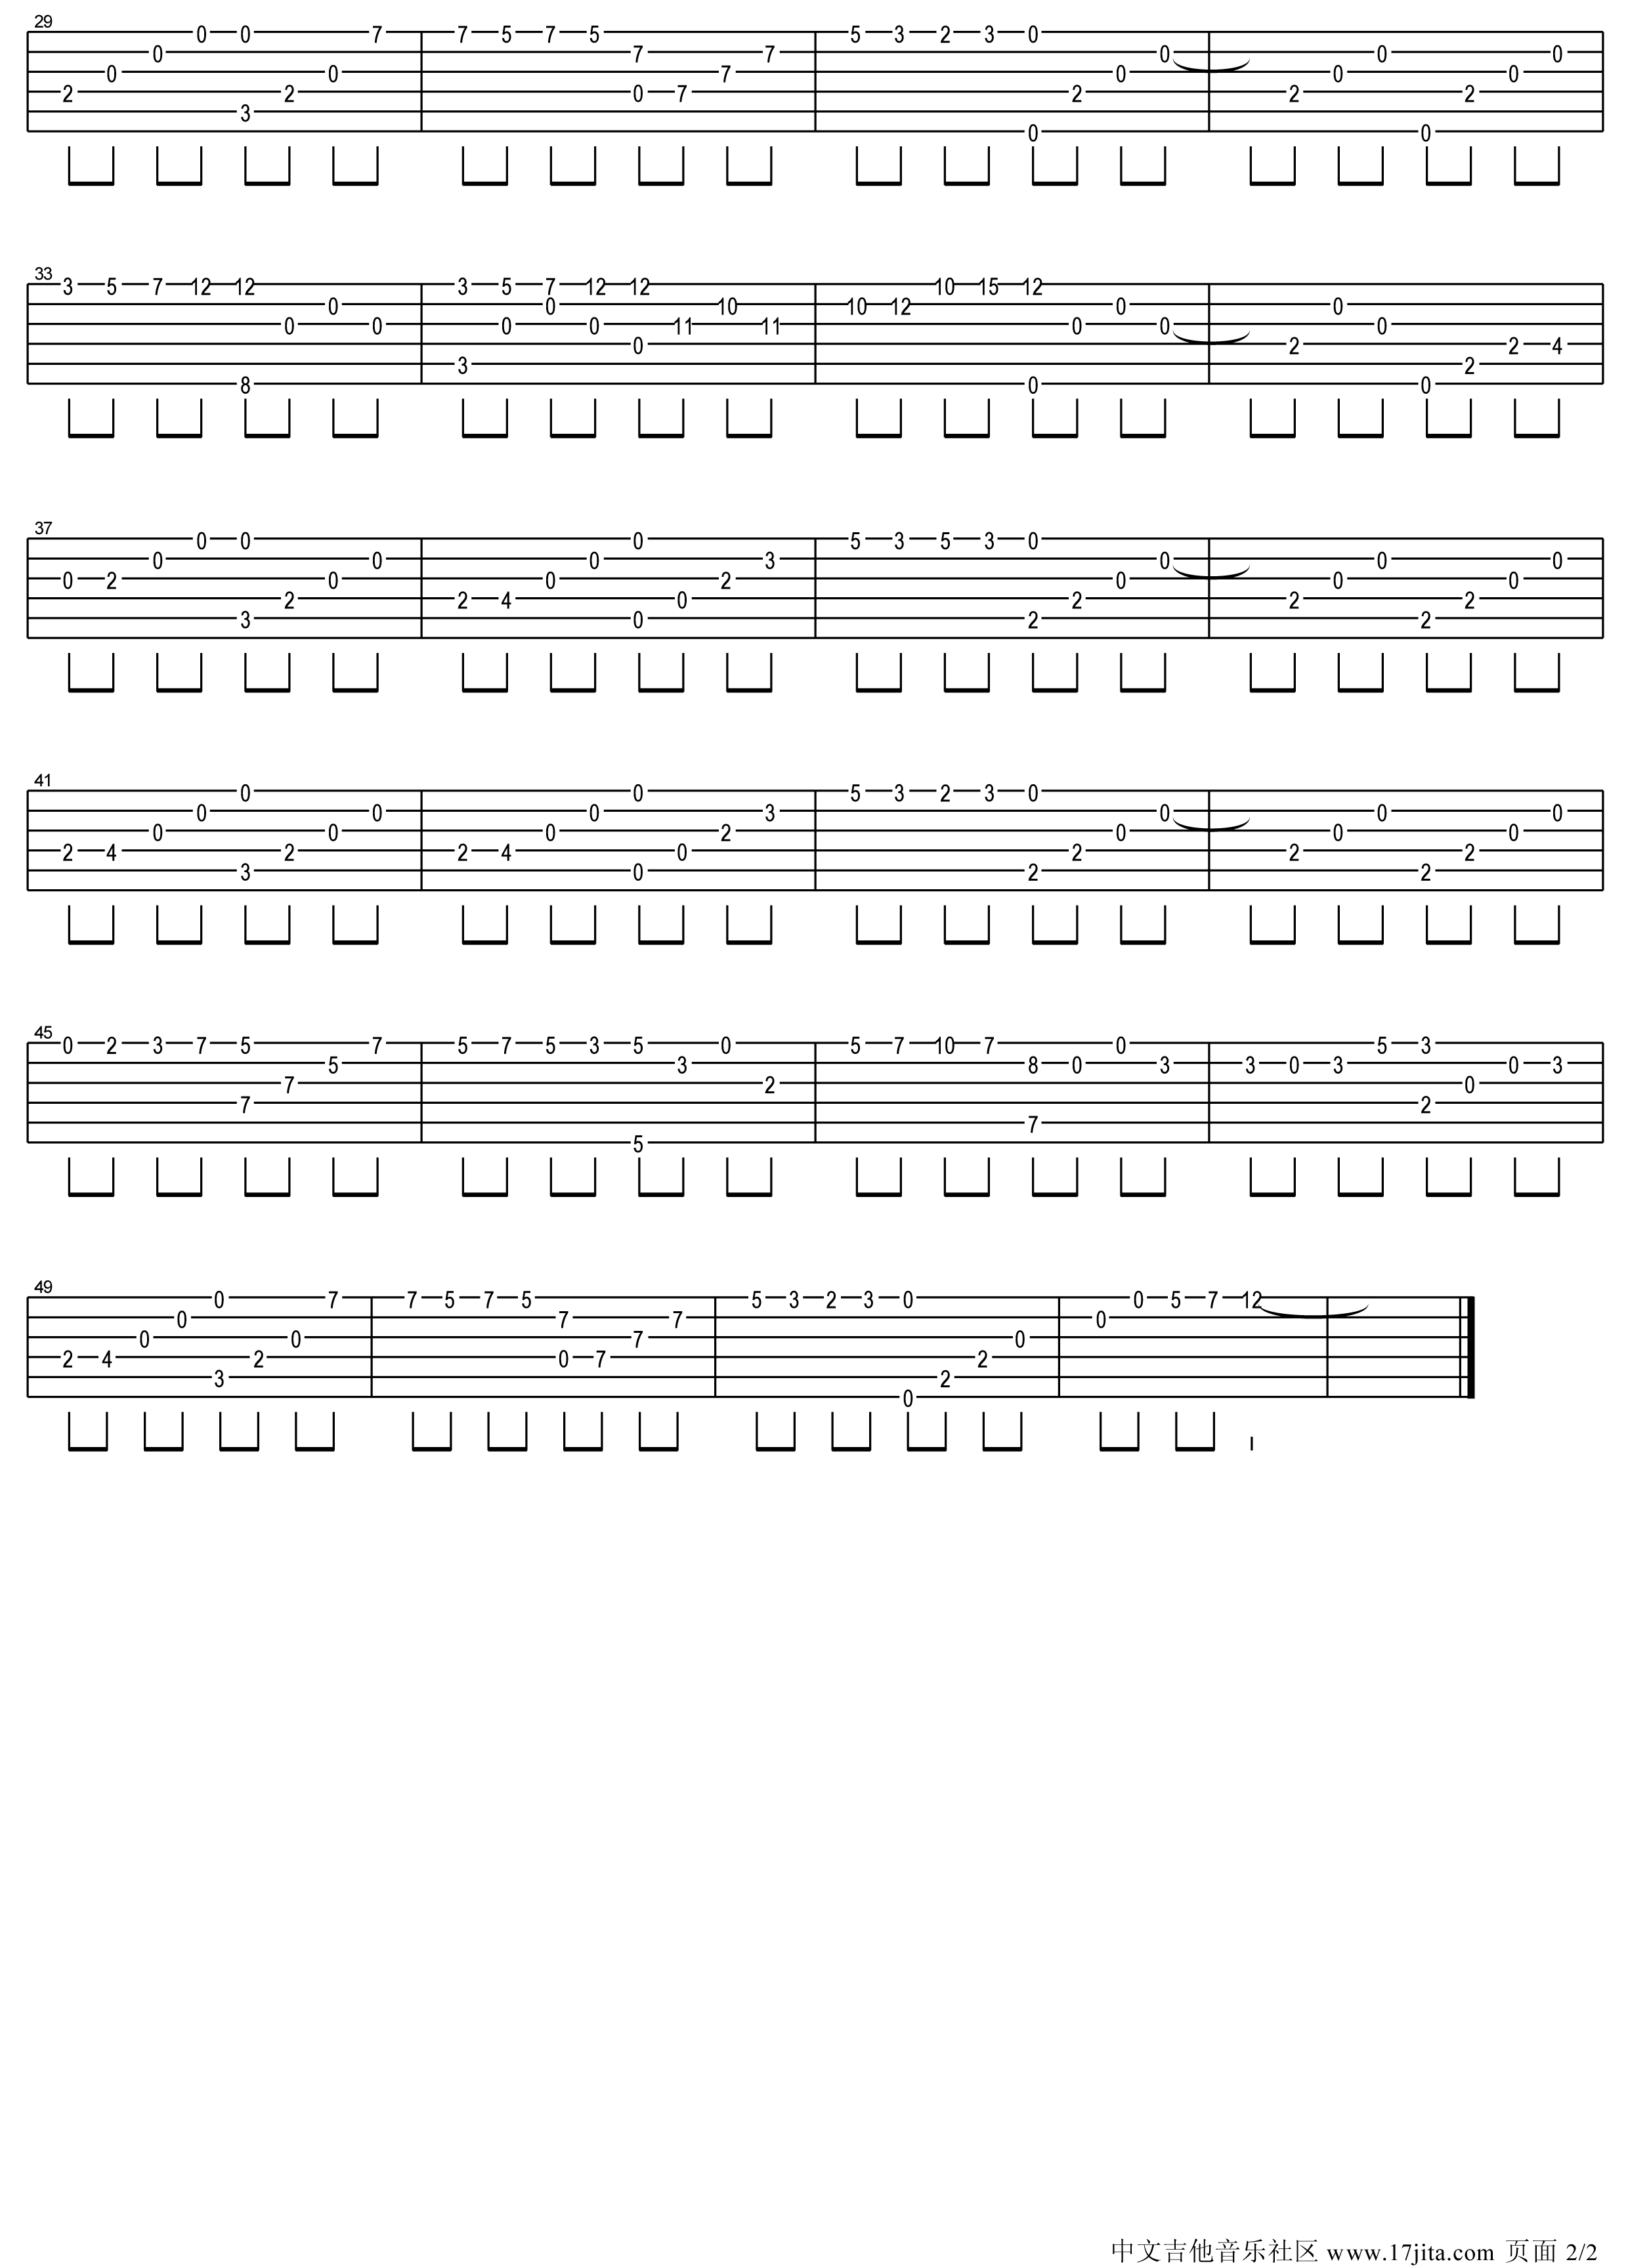 夜的钢琴曲五指弹吉他谱第(2)页